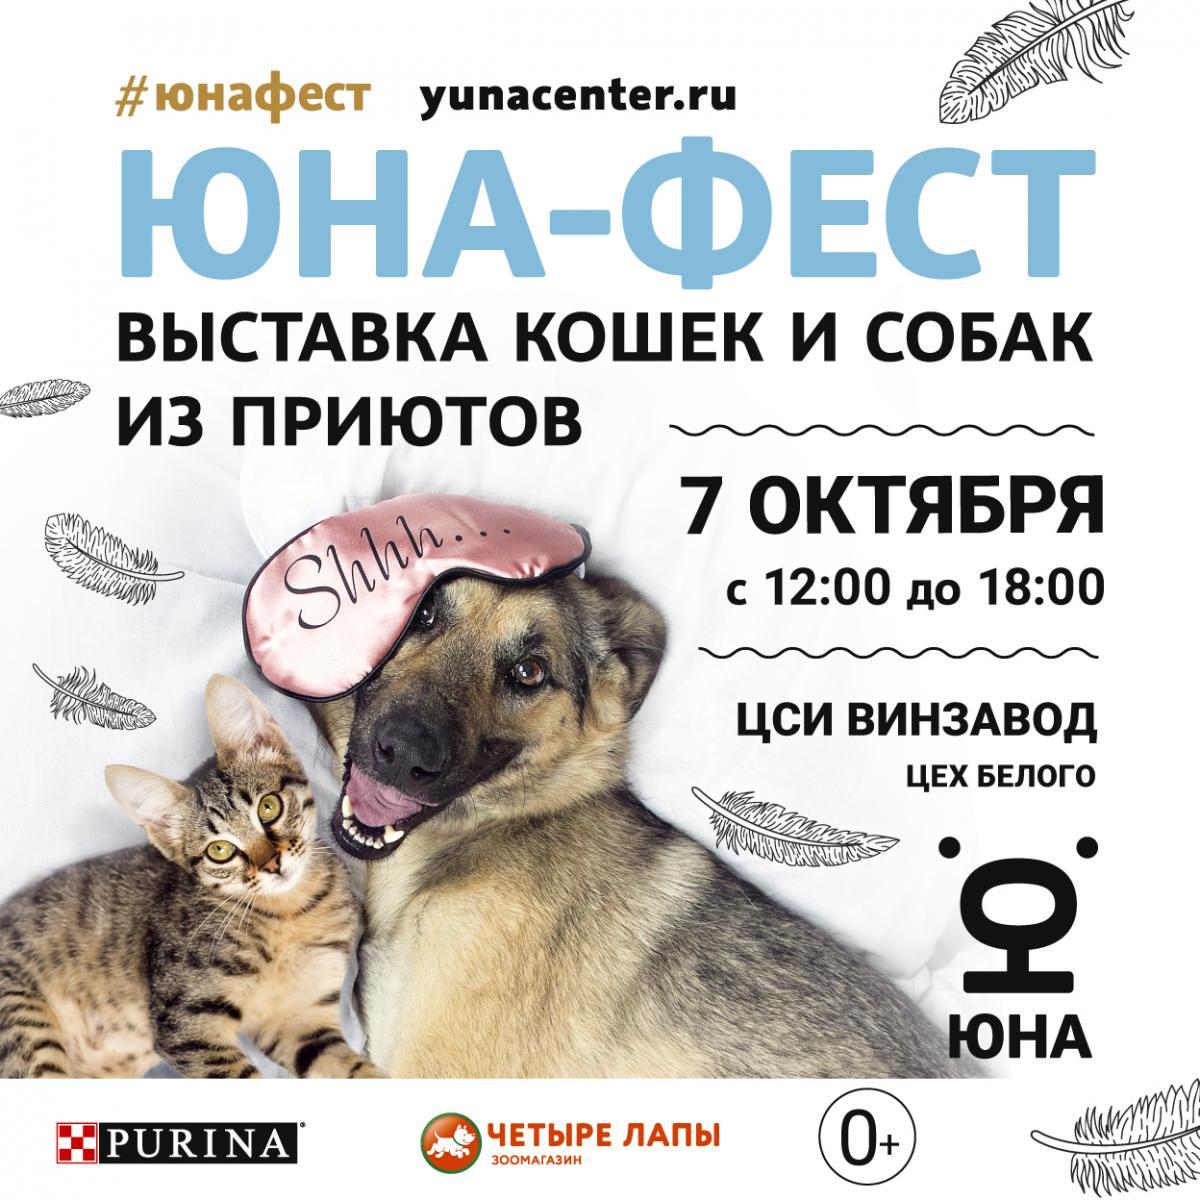  Центр реабилитации временно бездомных животных «Юна» проведет 10-ю Юбилейную выставку-пристройство собак и кошек из приютов